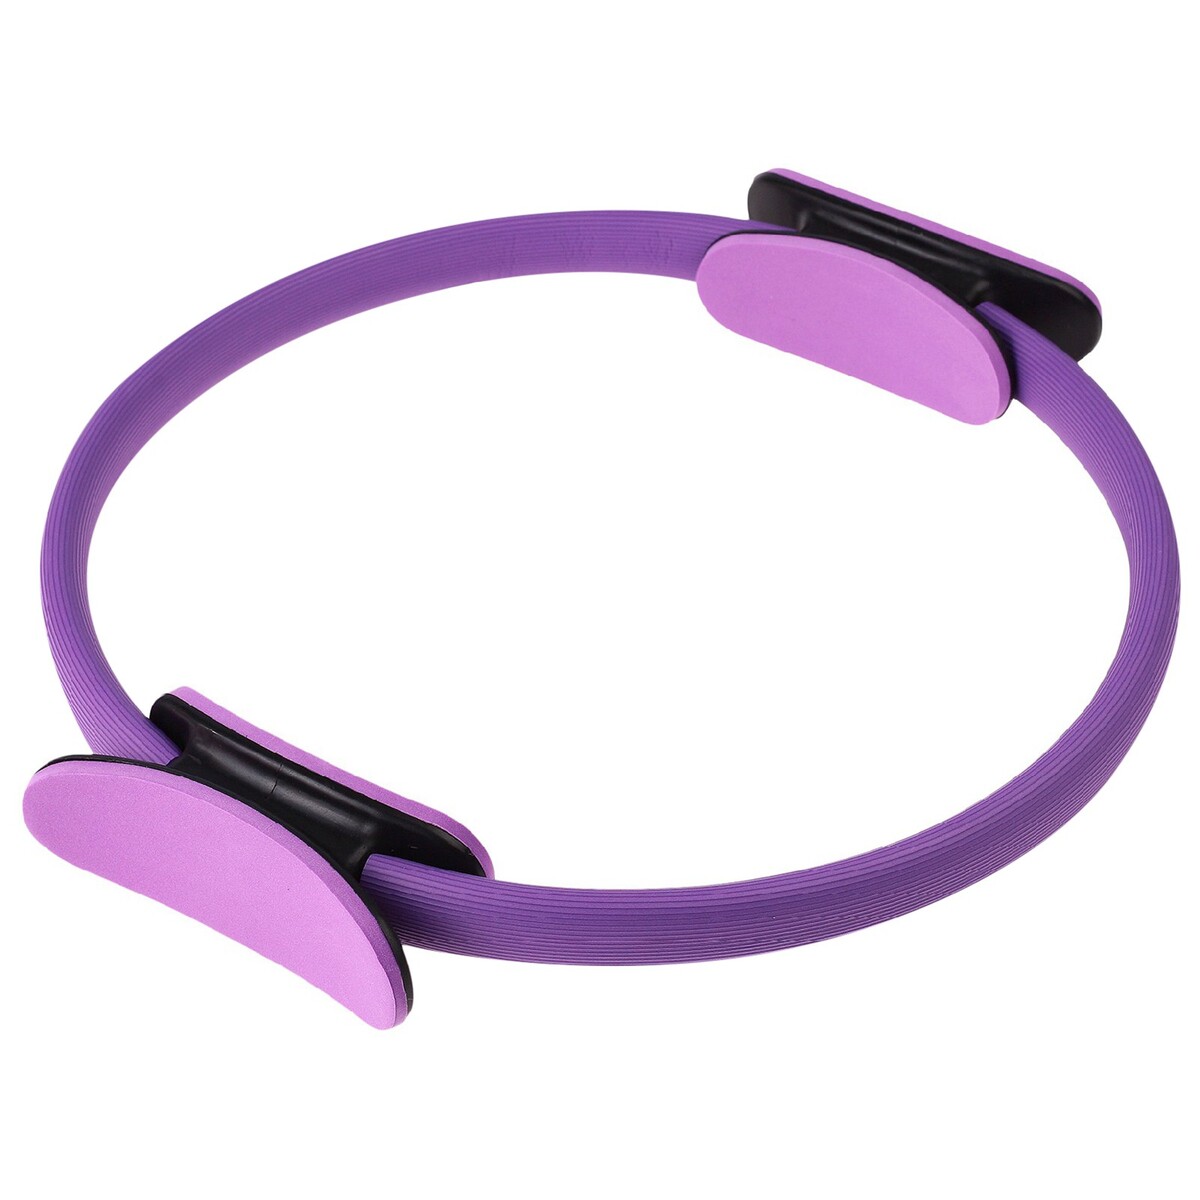 Кольцо для пилатеса onlytop, d=37 см, цвет фиолетовый кольцо для пилатеса torres 38 см yl5004